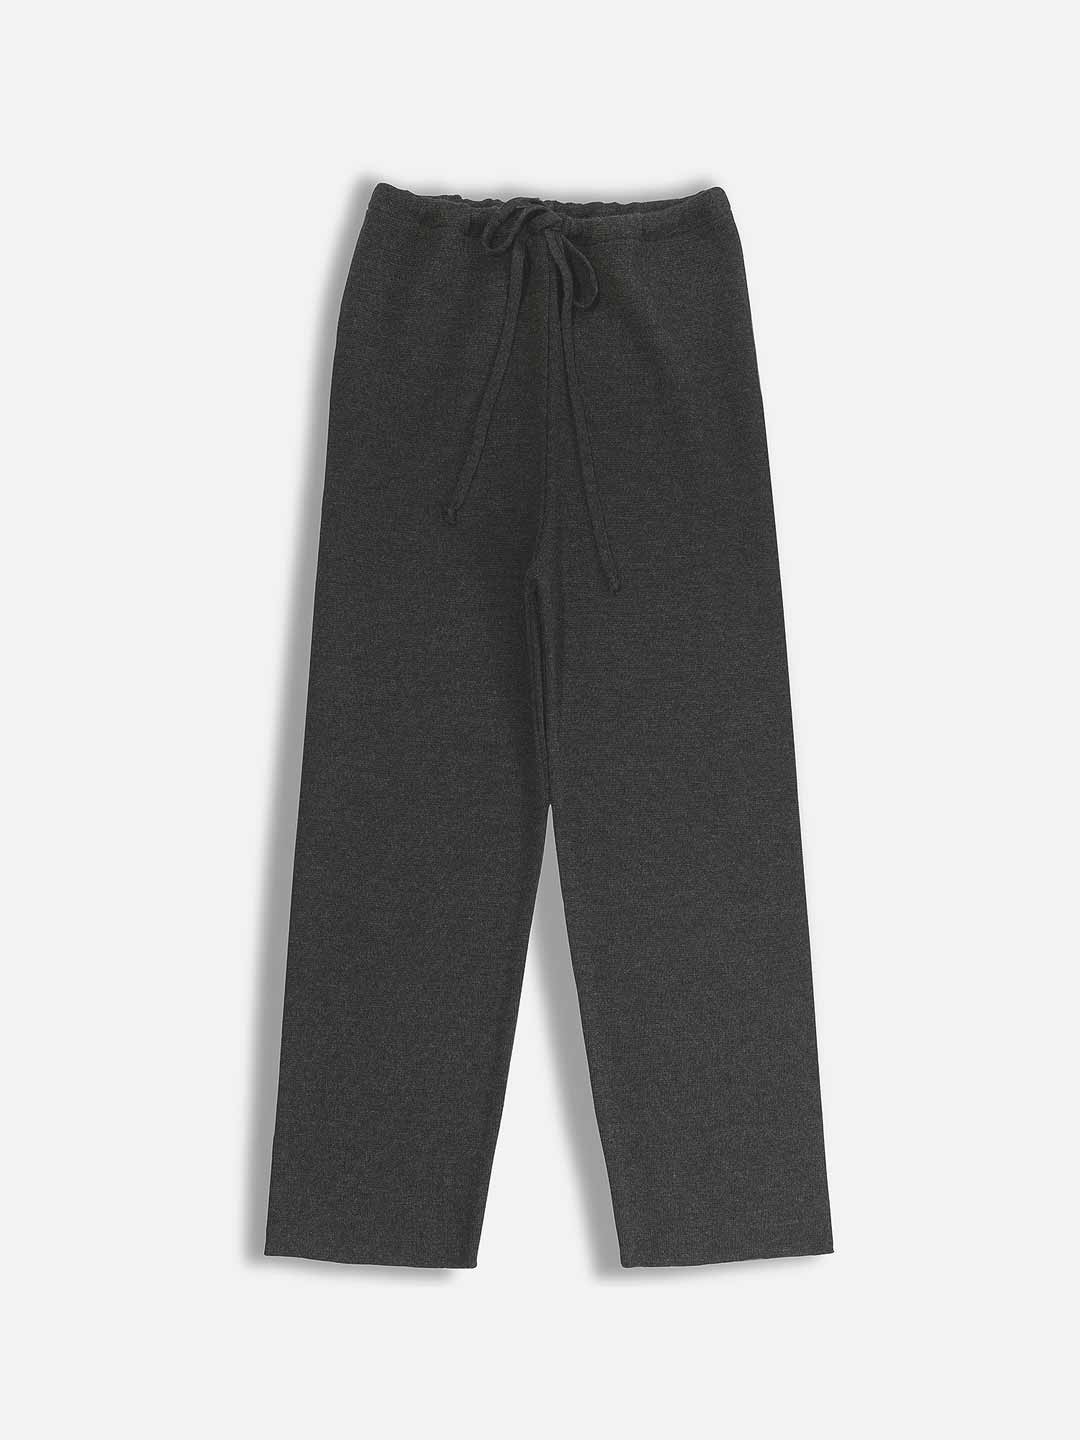 Plain Pants with Tie in Merino Wool